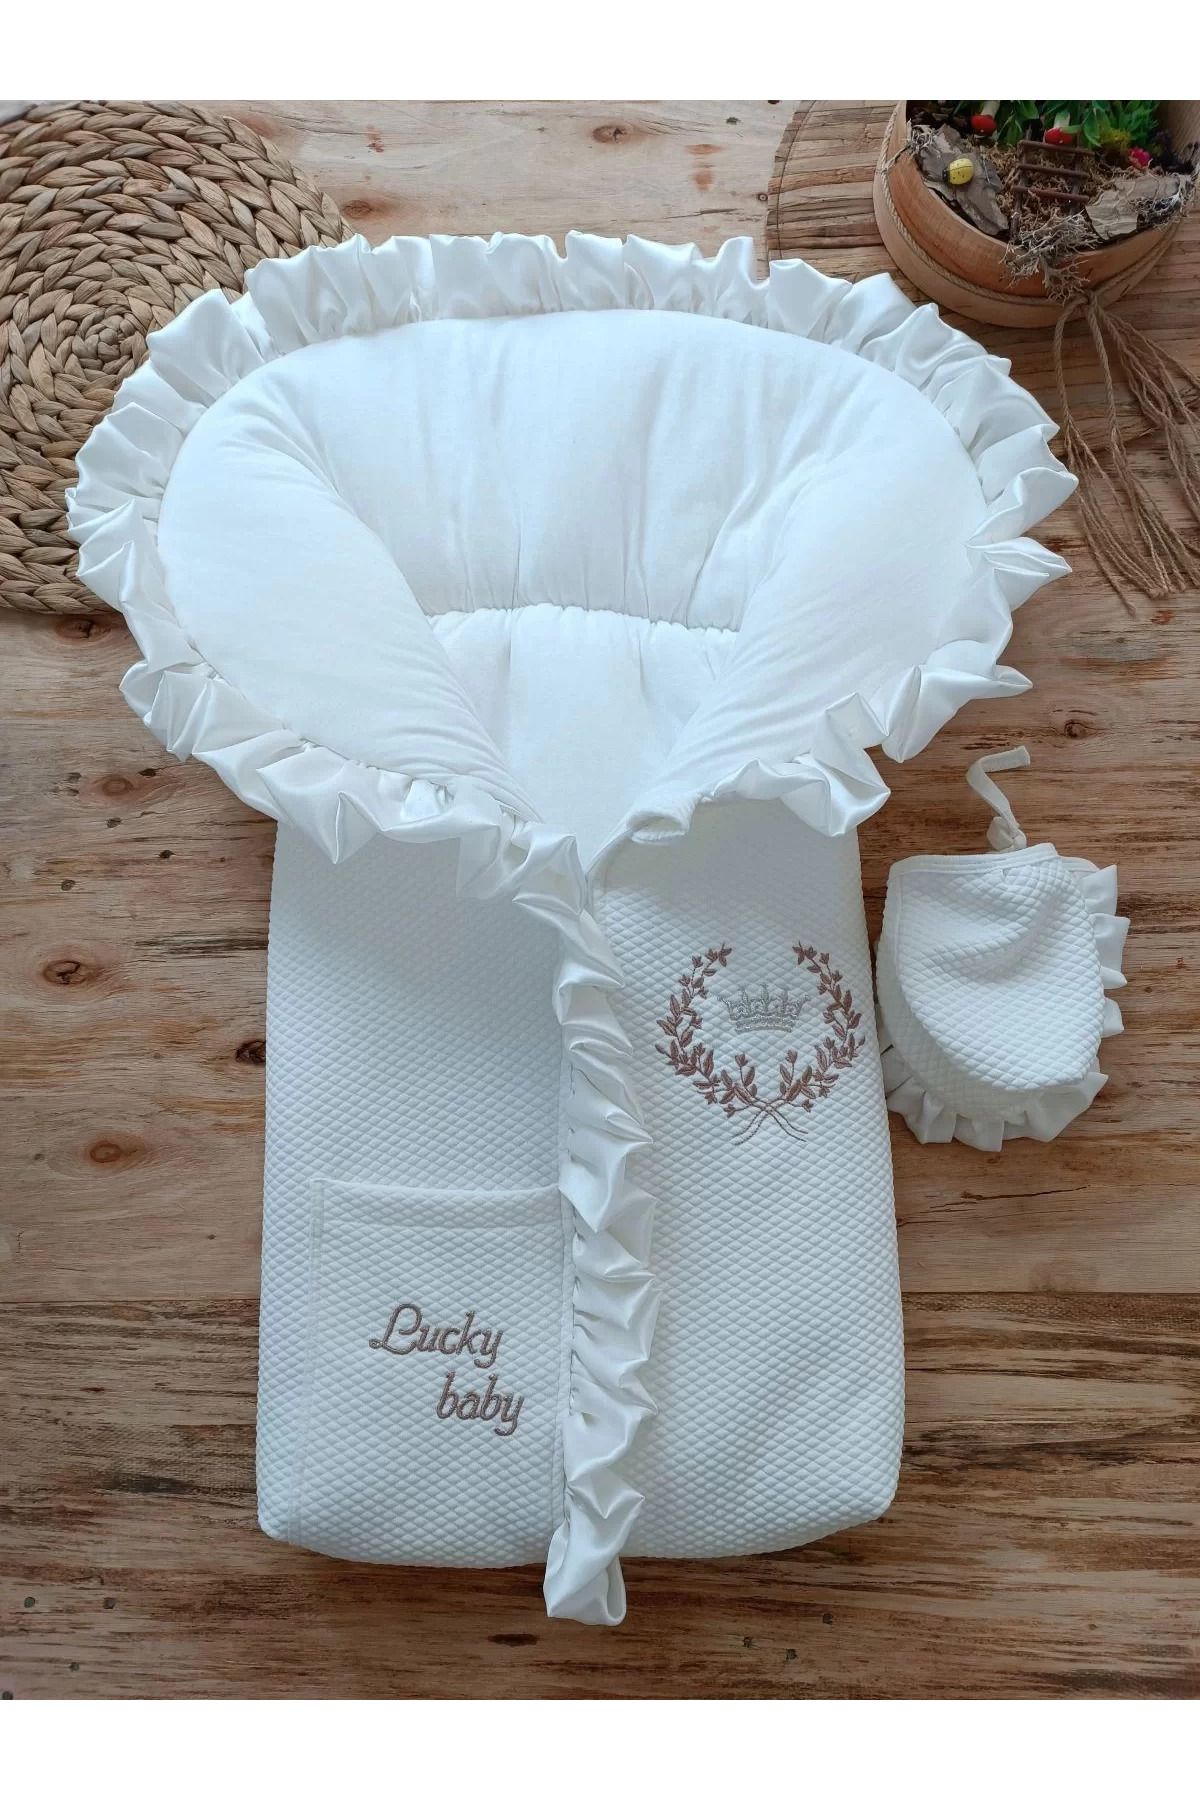 Shop58 Yenidoğan Ultralüks Fermuarlı Ve Cepli Lucky Baby Nakışlı Bebek Battaniyesi Kundak Ekru